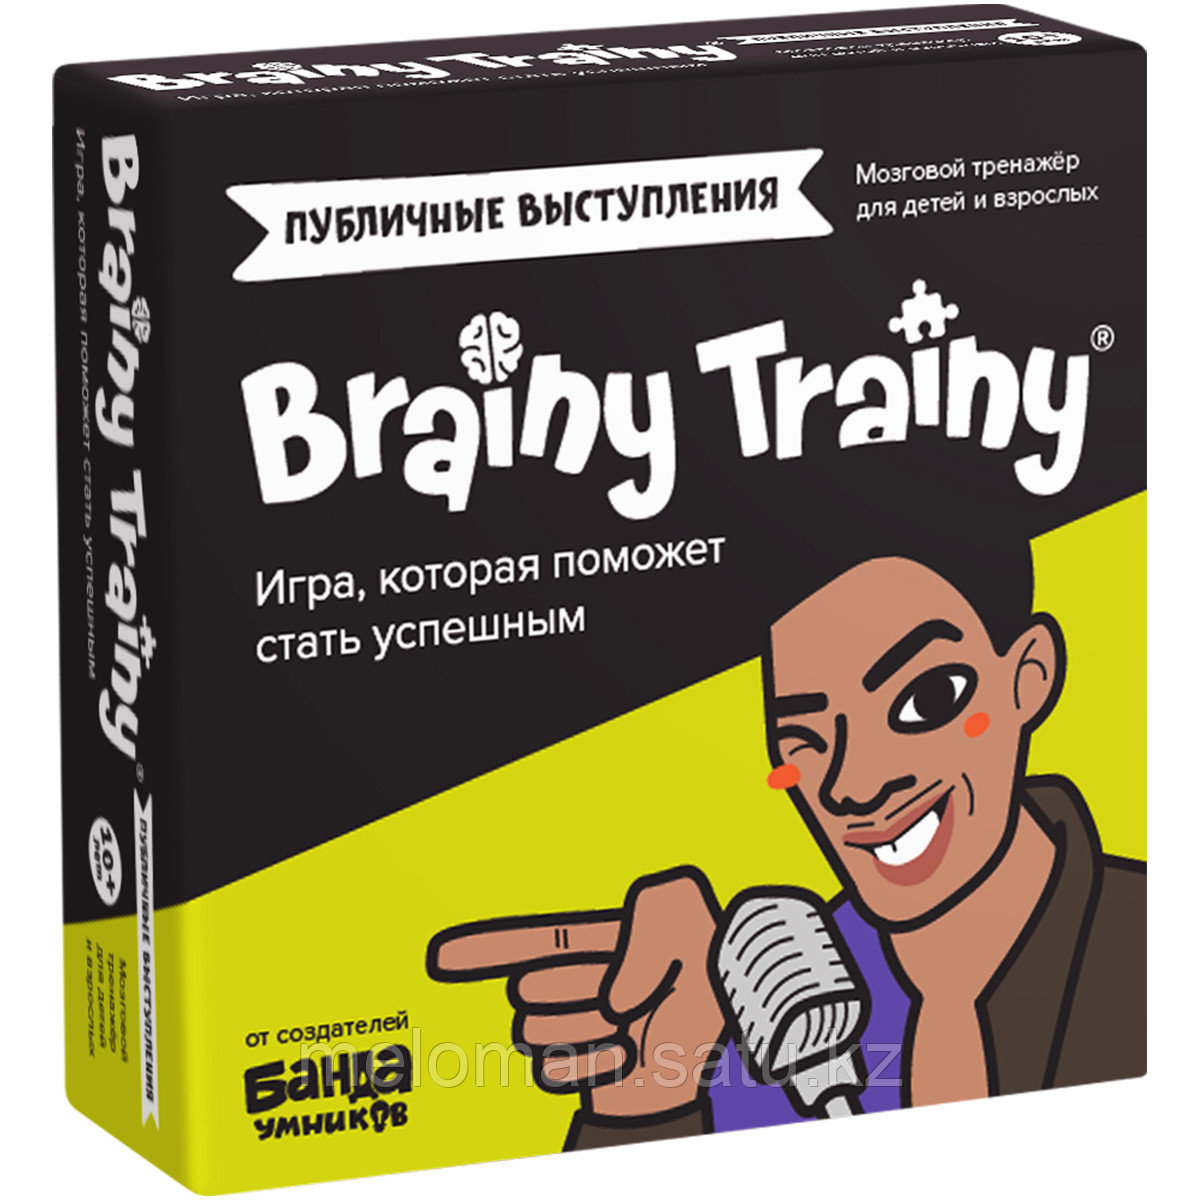 BRAINY TRAINY: Публичные выступления